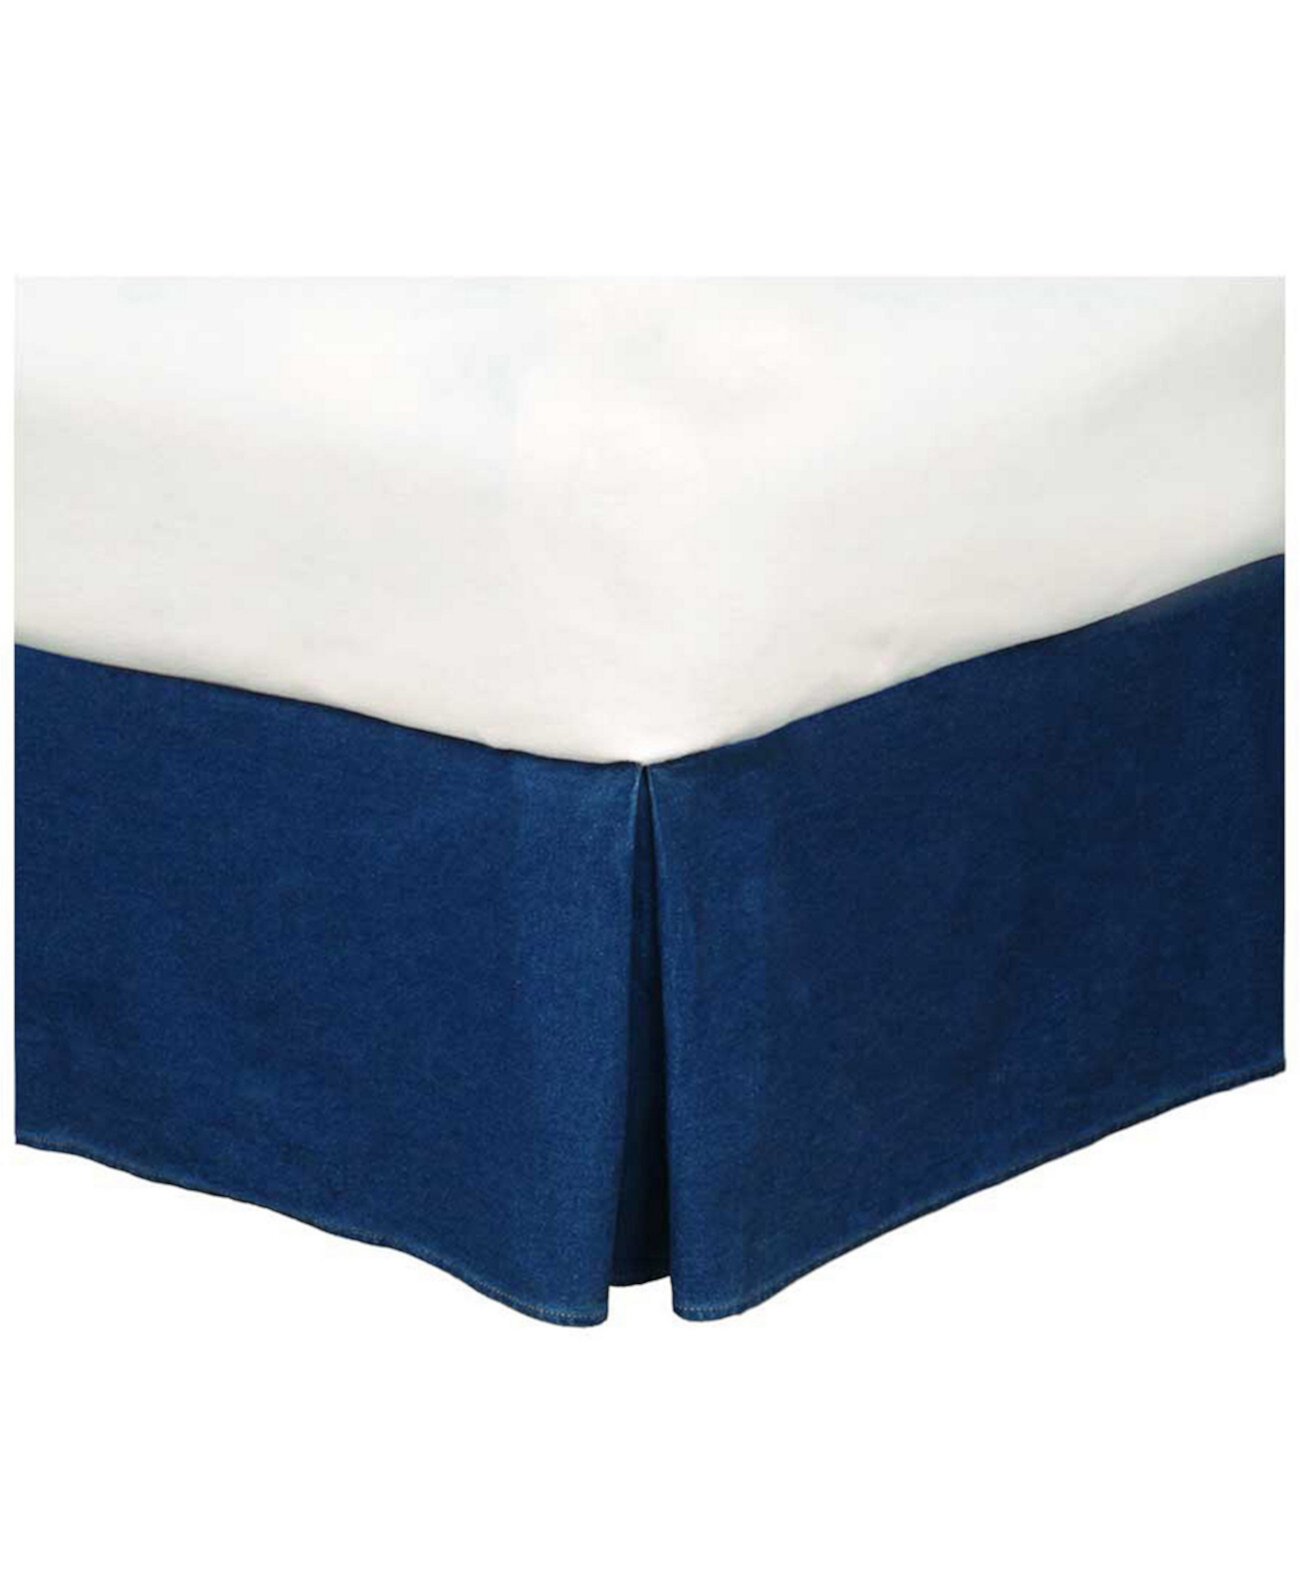 Американская джинсовая юбка с кроватью размера "king-size" Karin Maki